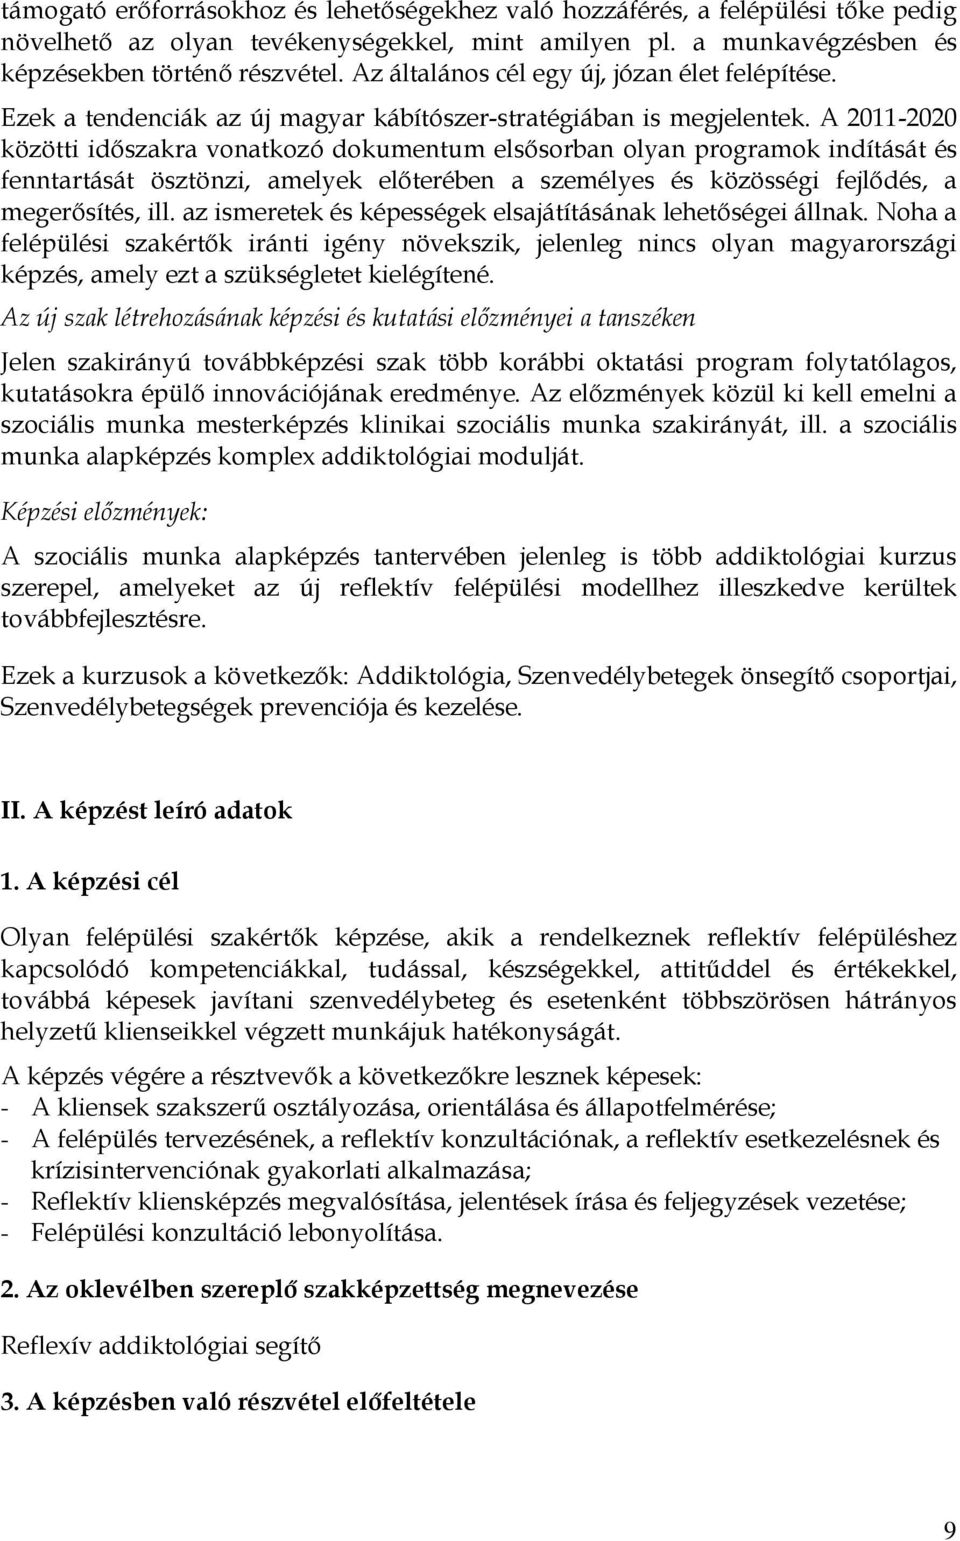 A 2011-2020 közötti idıszakra vonatkozó dokumentum elsısorban olyan programok indítását és fenntartását ösztönzi, amelyek elıterében a személyes és közösségi fejlıdés, a megerısítés, ill.